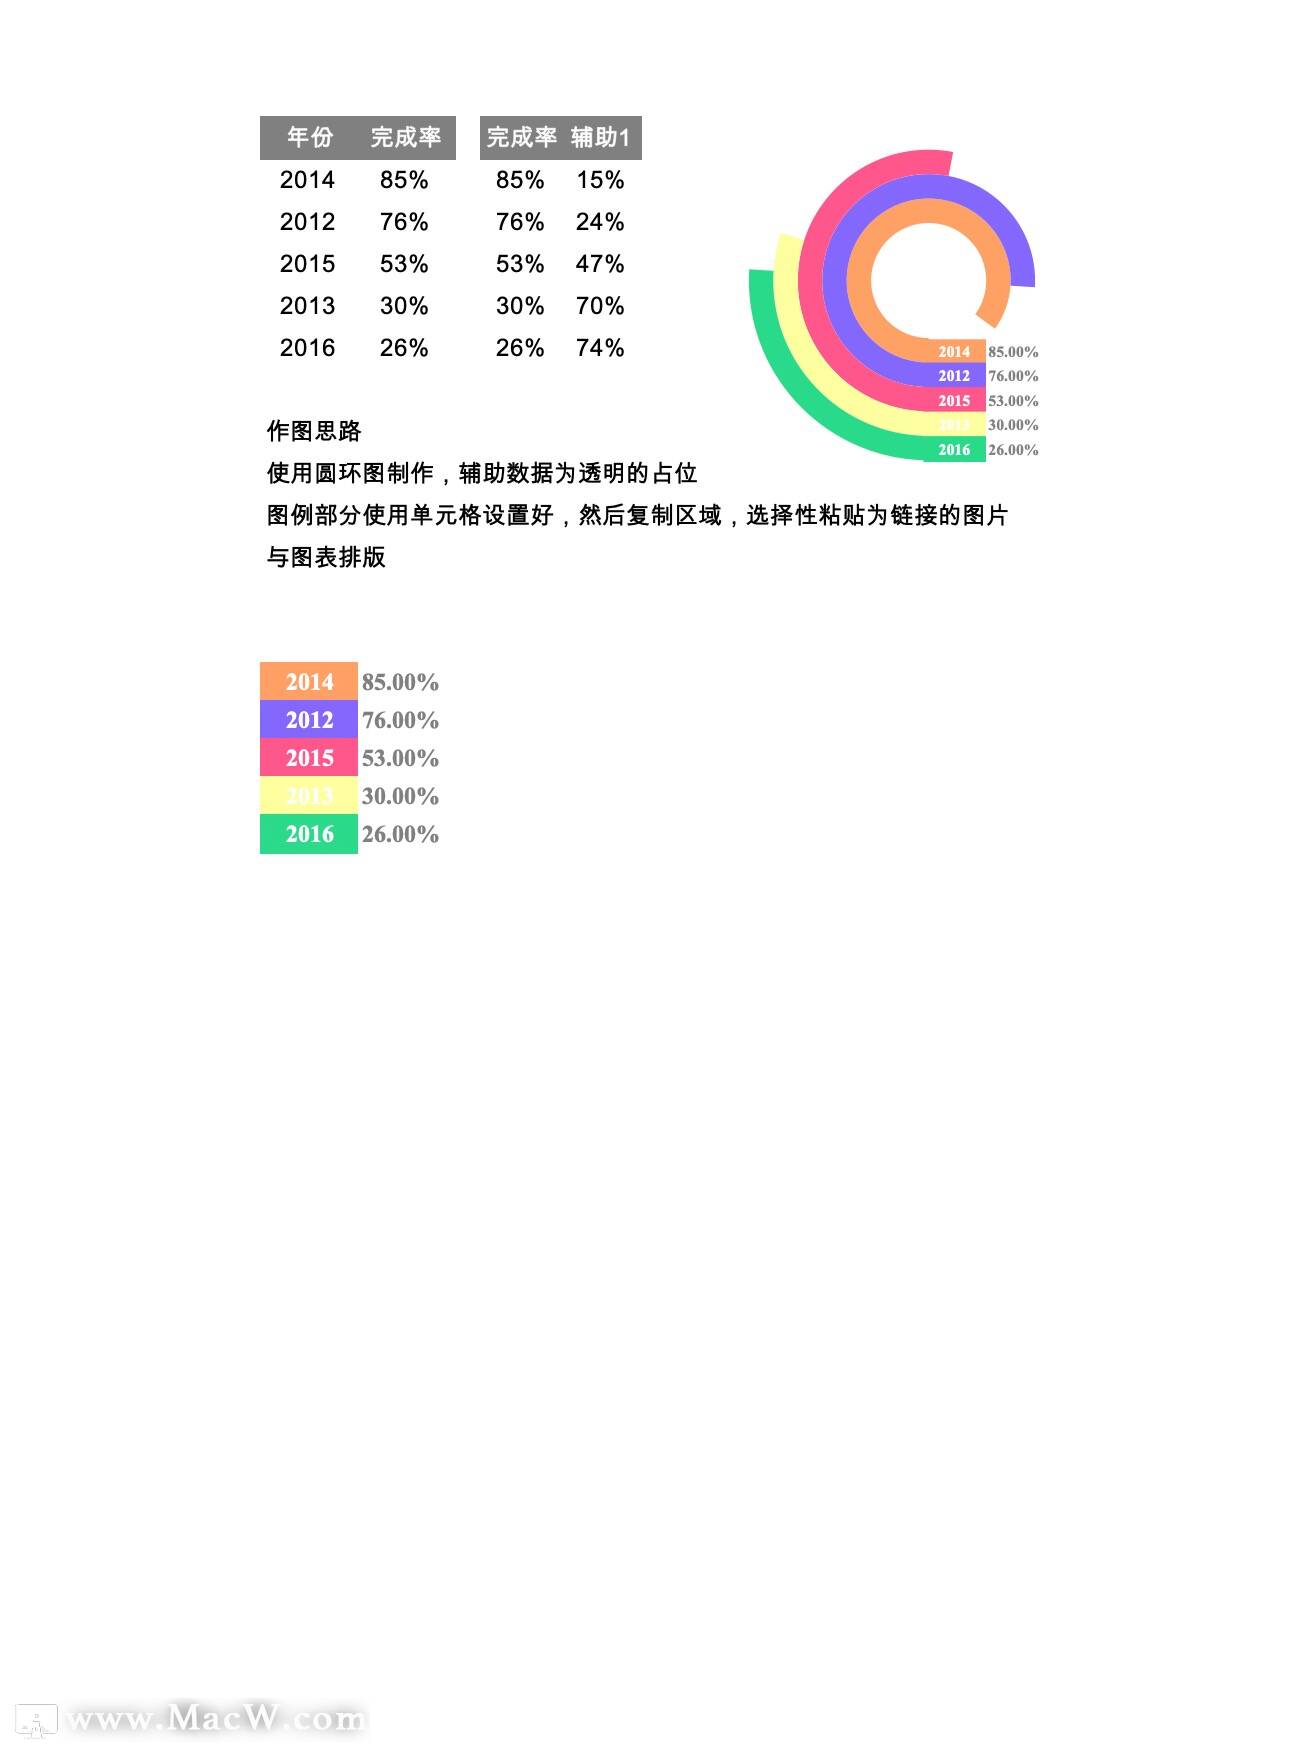 彩色圆环图制作Excel模板